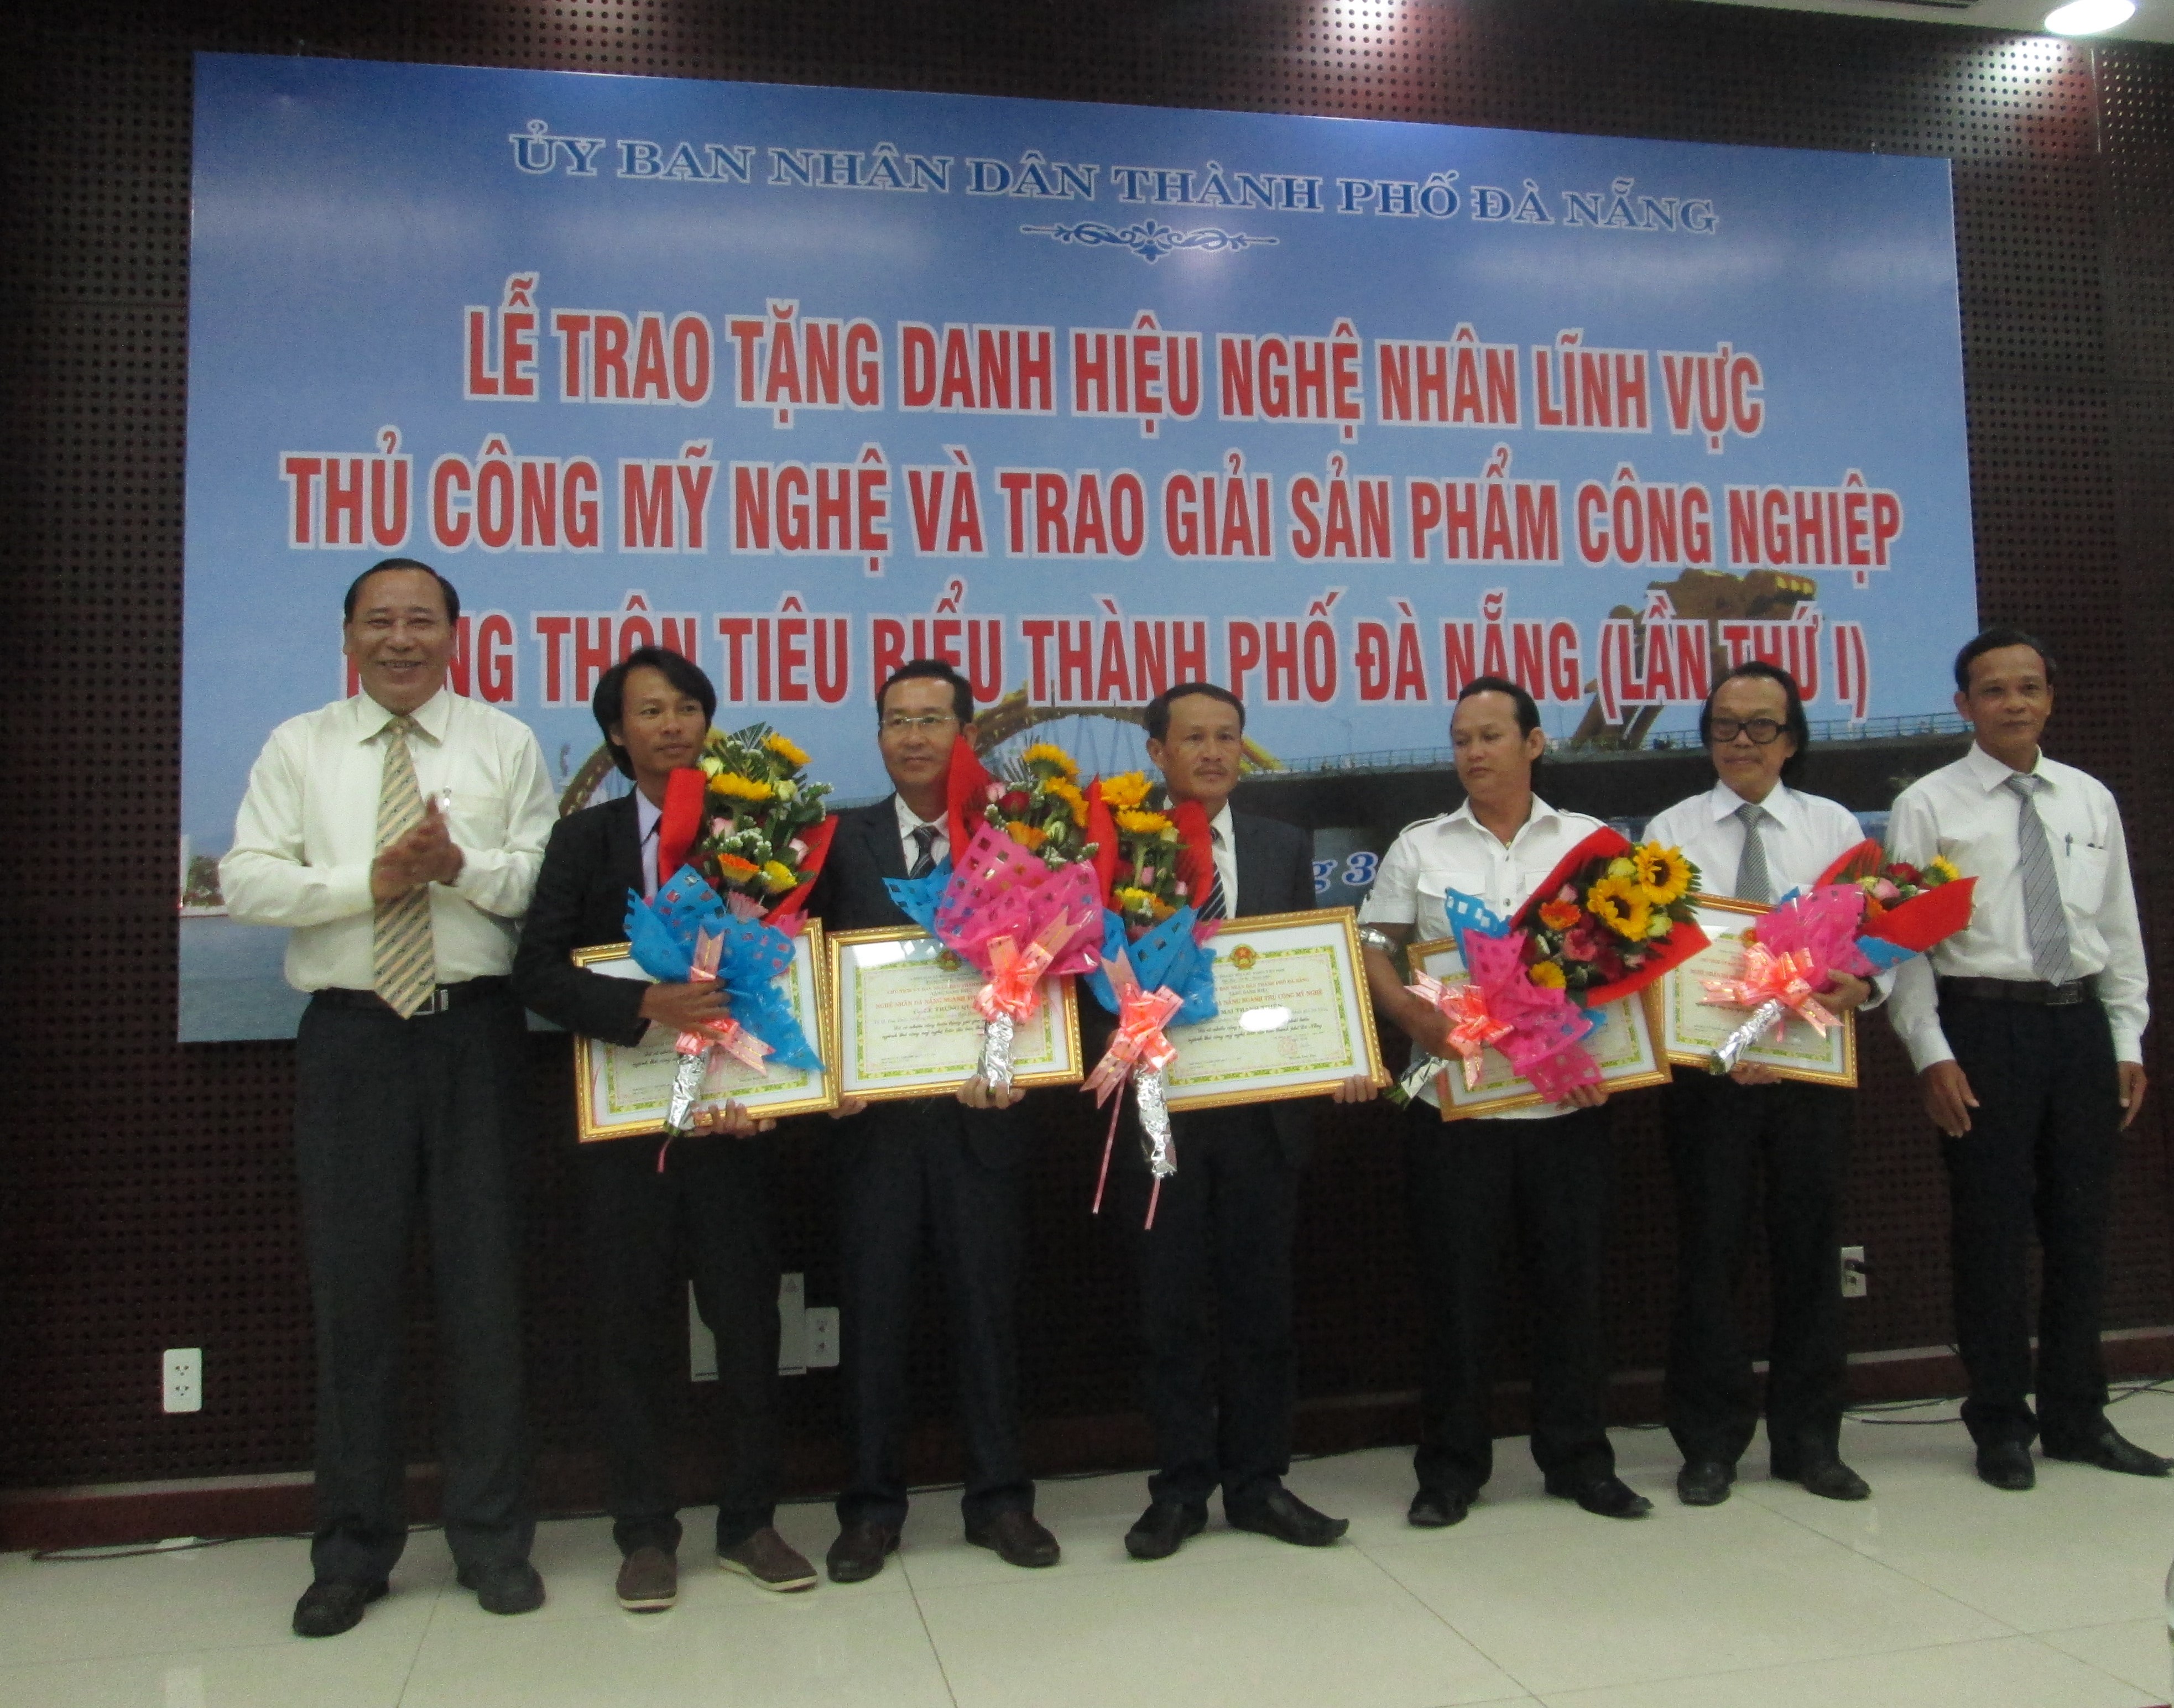 Đà Nẵng: Trao tặng danh hiệu nghệ nhân lĩnh vực Thủ công mỹ nghệ và trao giải sản phẩm công nghiệp - Hình 1